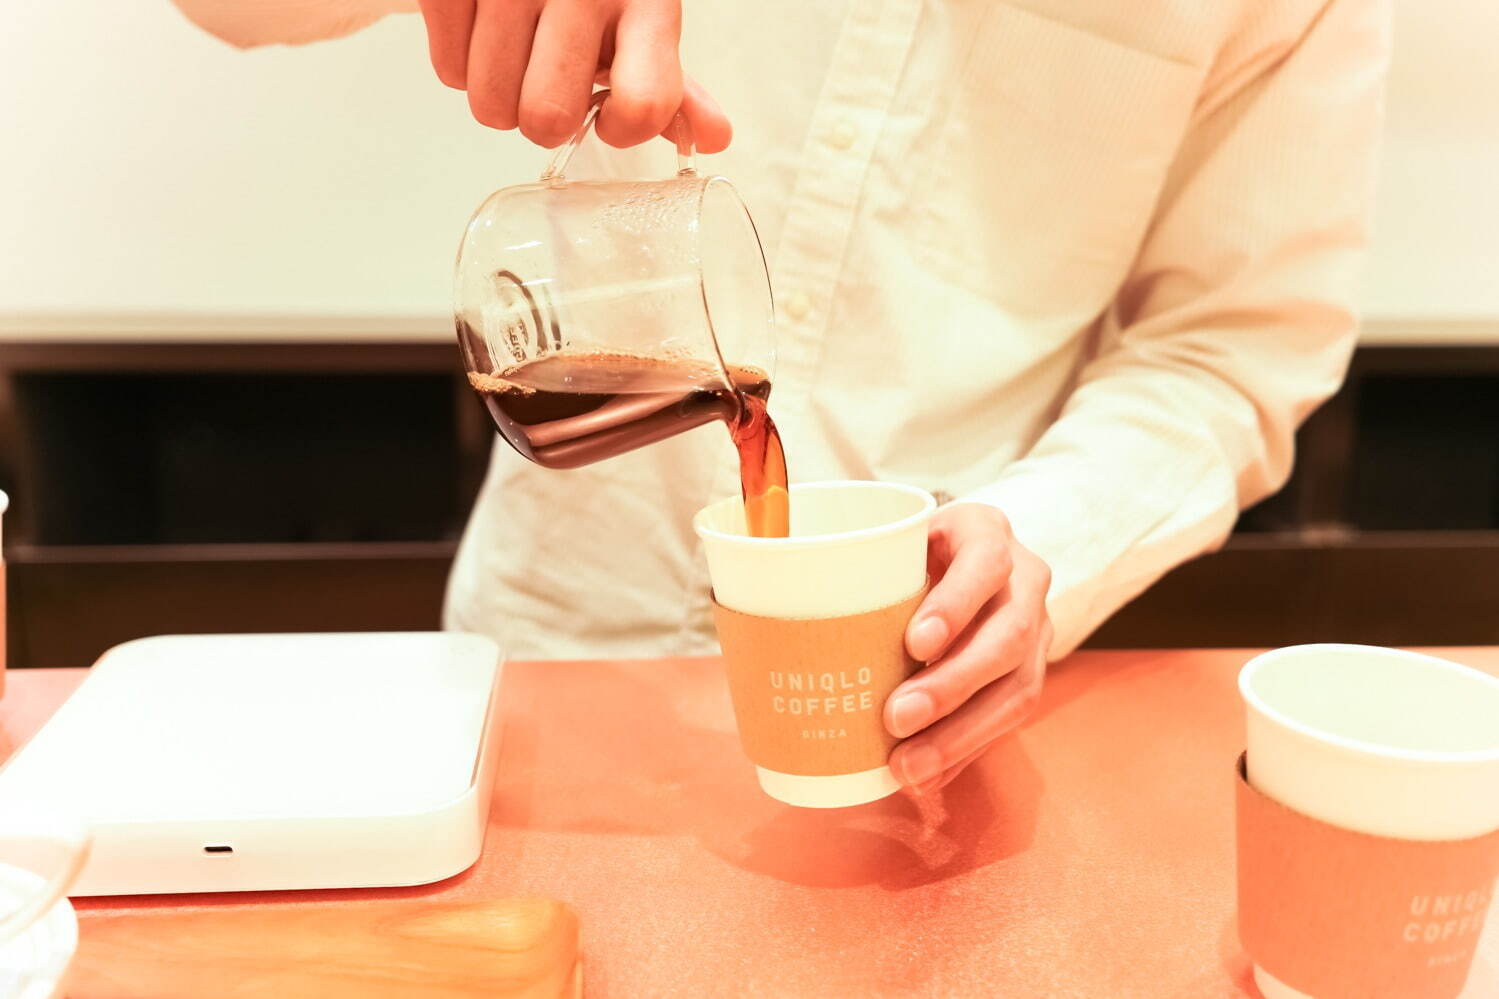 ユニクロ オリジナルブレンドコーヒー ホット／アイス 200円
ゲイシャ種ハンドドリップコーヒー ホット 450円＜数量限定＞